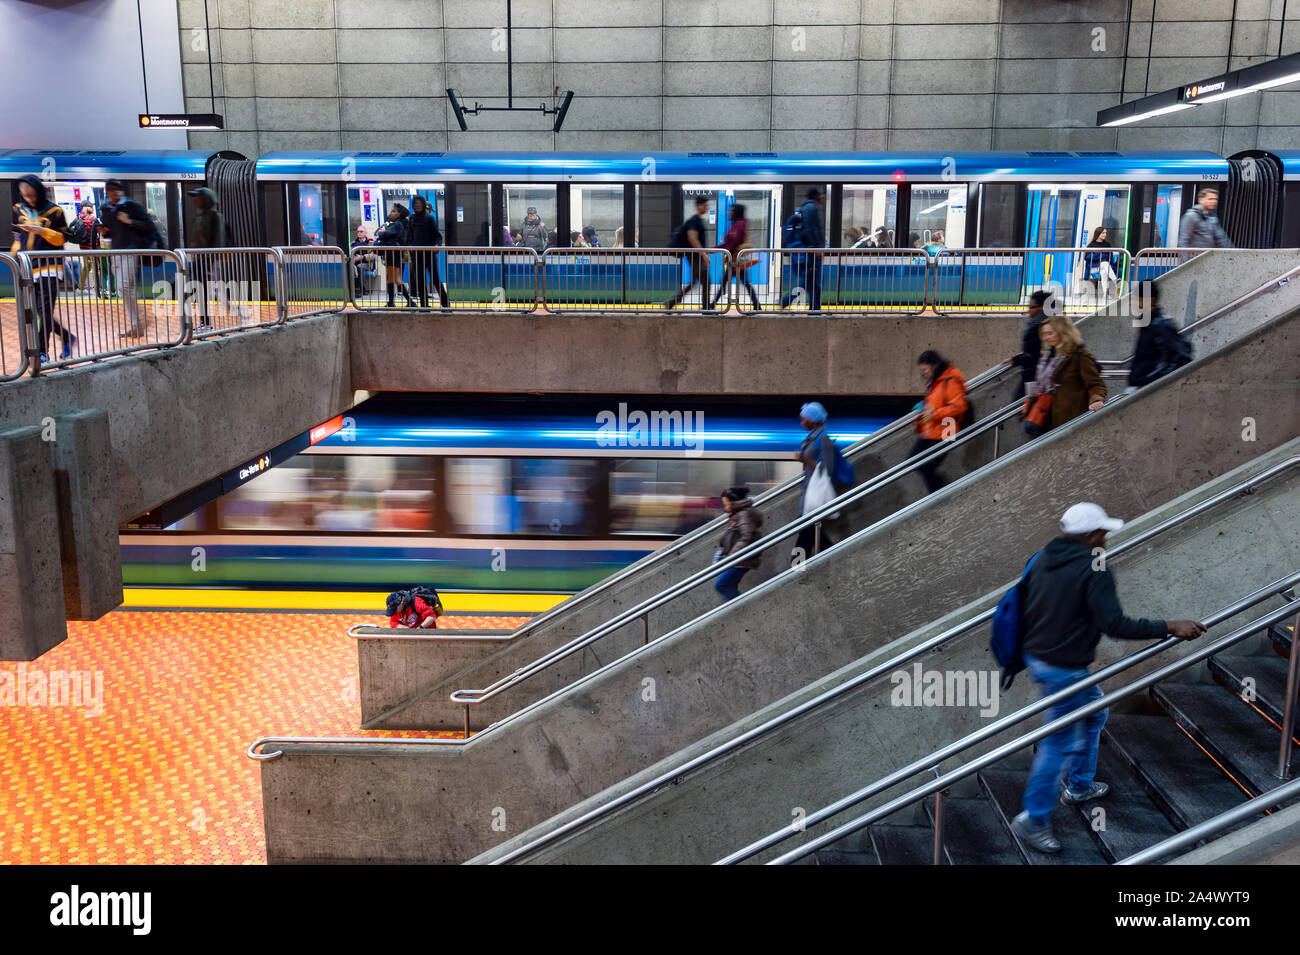 Montréal, CA - 15 octobre 2019 : deux en train de métro Lionel Groux. Banque D'Images